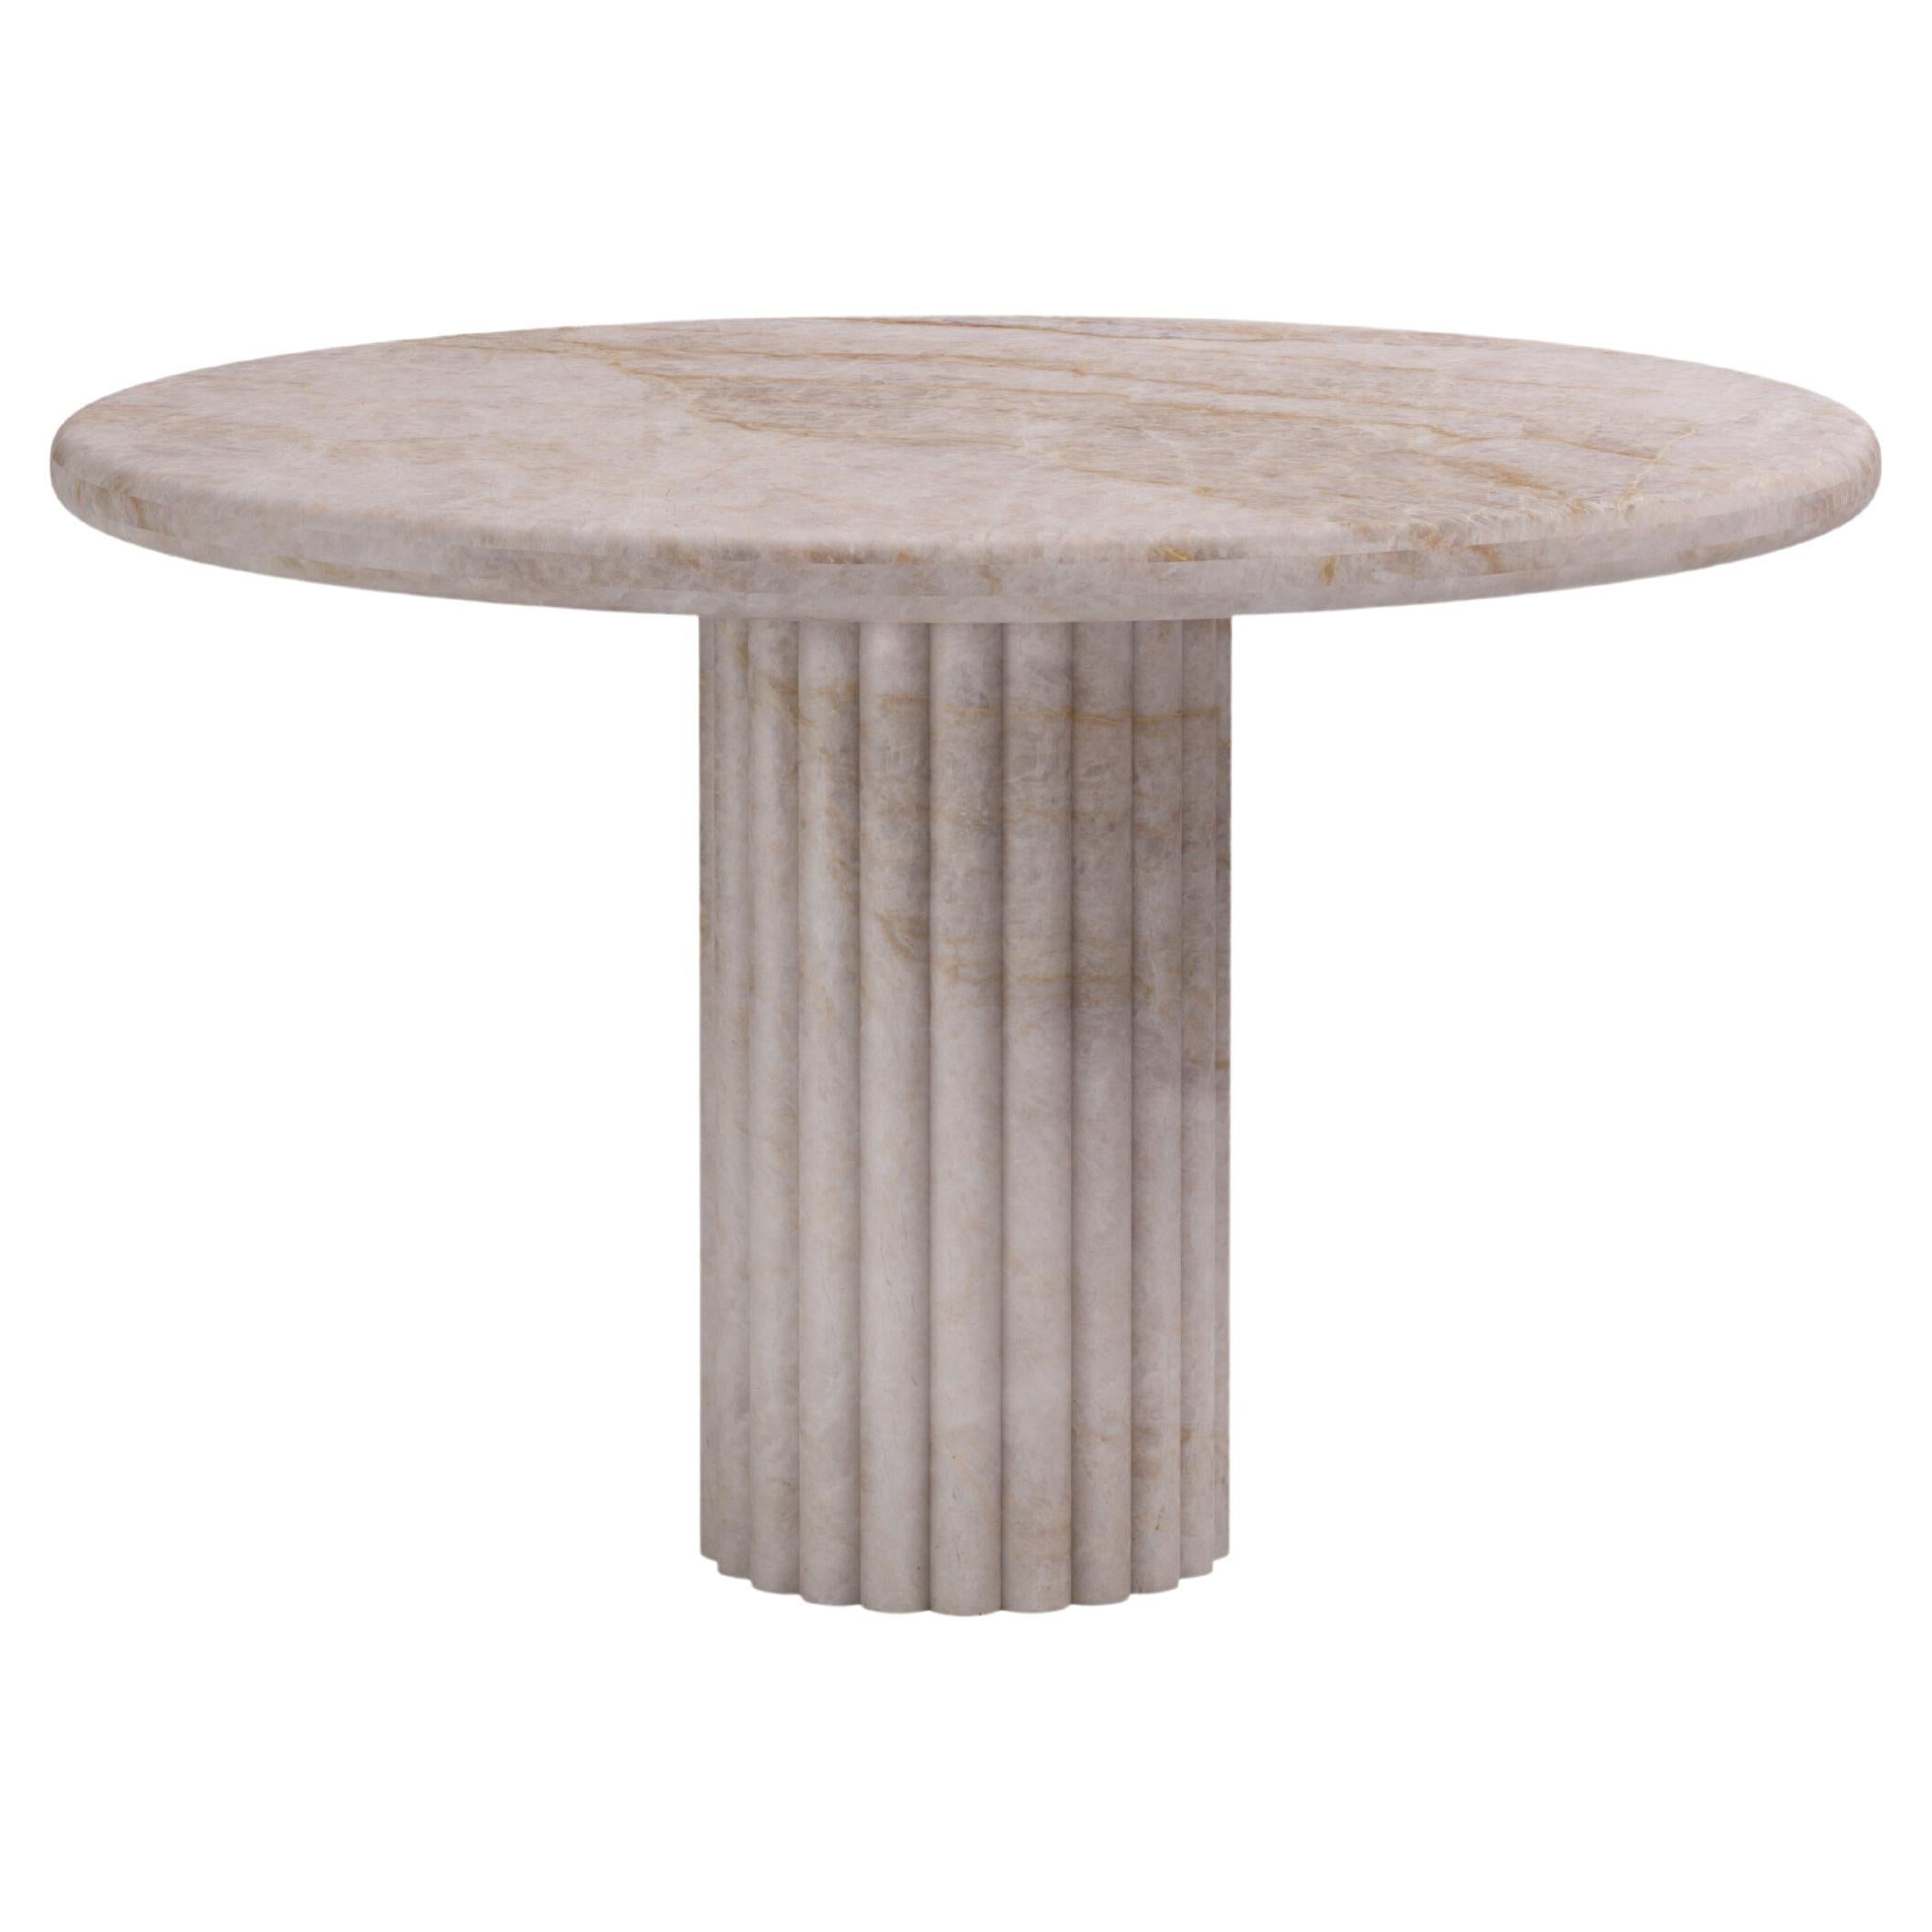 FORM(LA) Fluta Round Dining Table 36”L x 36”W x 30”H Taj Mahal Quartzite